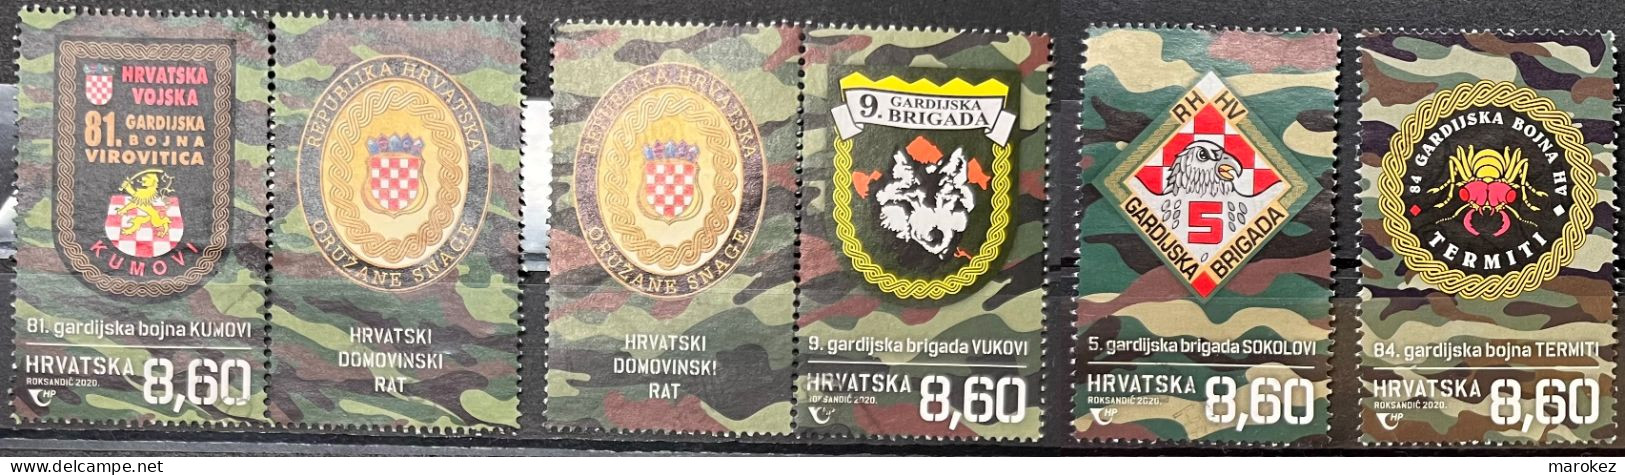 CROATIA 2020 Croatian War - Guard Brigades And Guard Battalions Postally Used Set MICHEL # 1454,1455,1456,1457 - Croatia